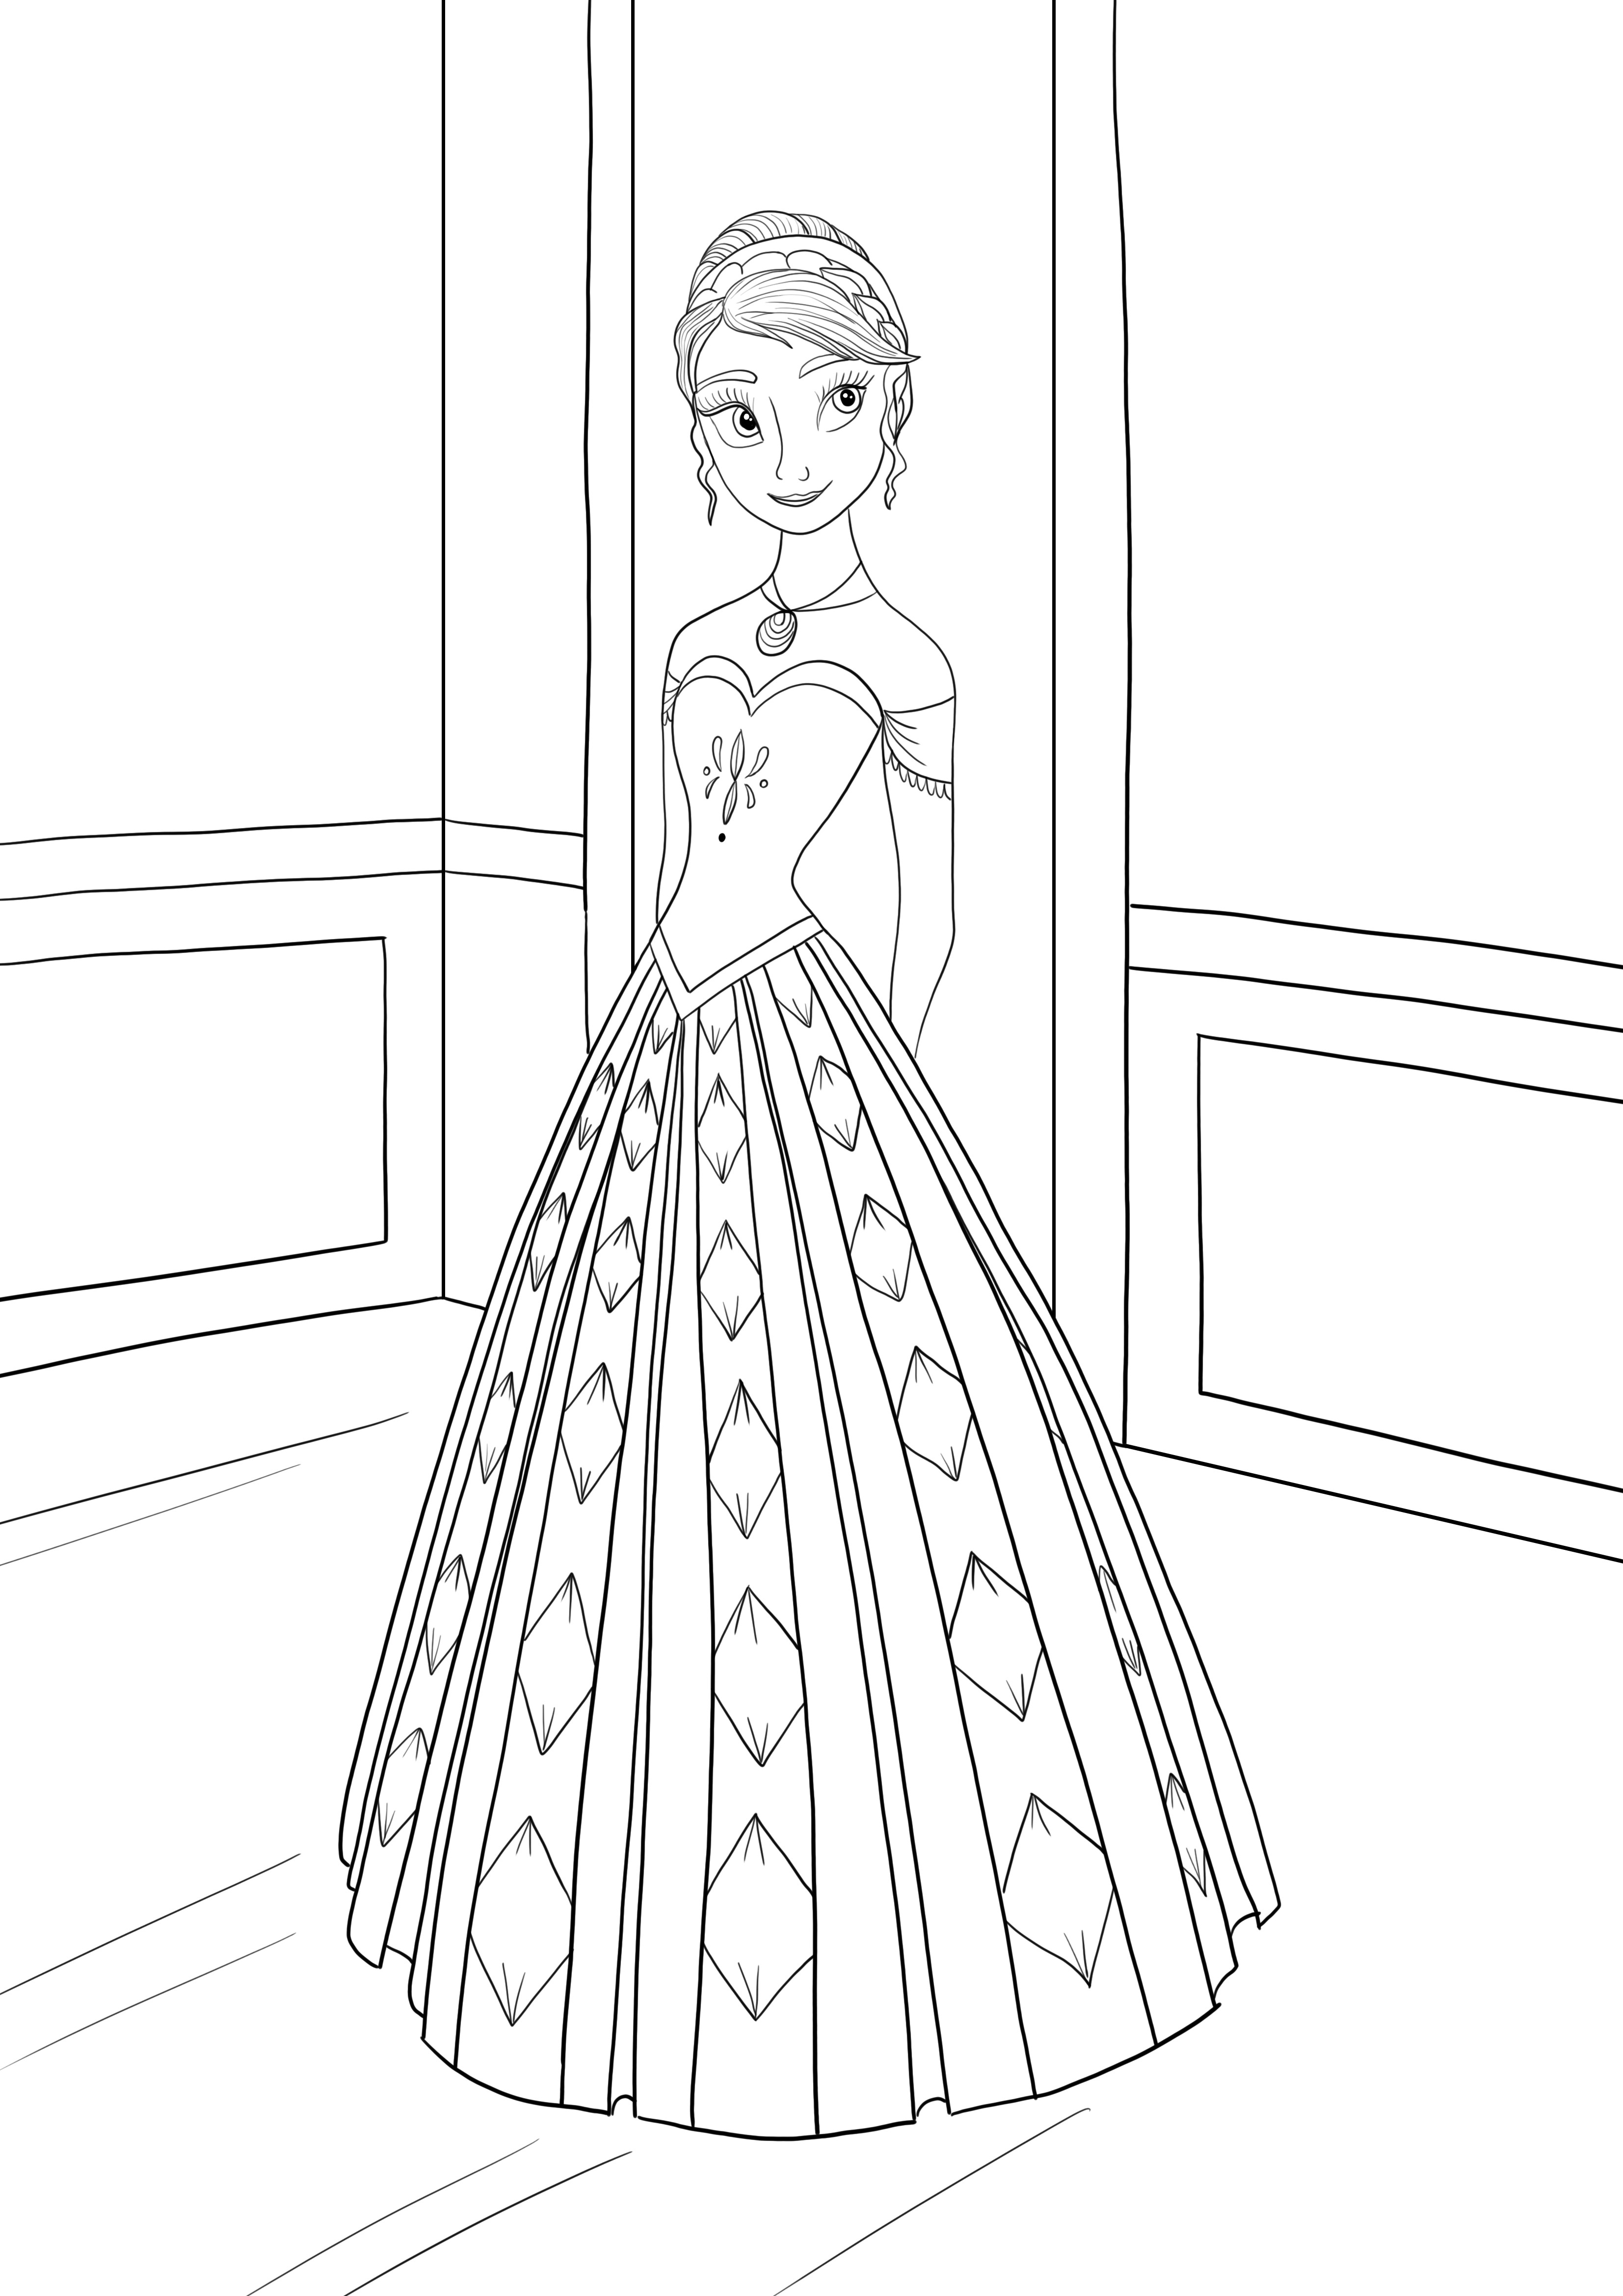 Anna hercegnő a Frozen rajzfilmből ingyenes nyomtatás és színezés